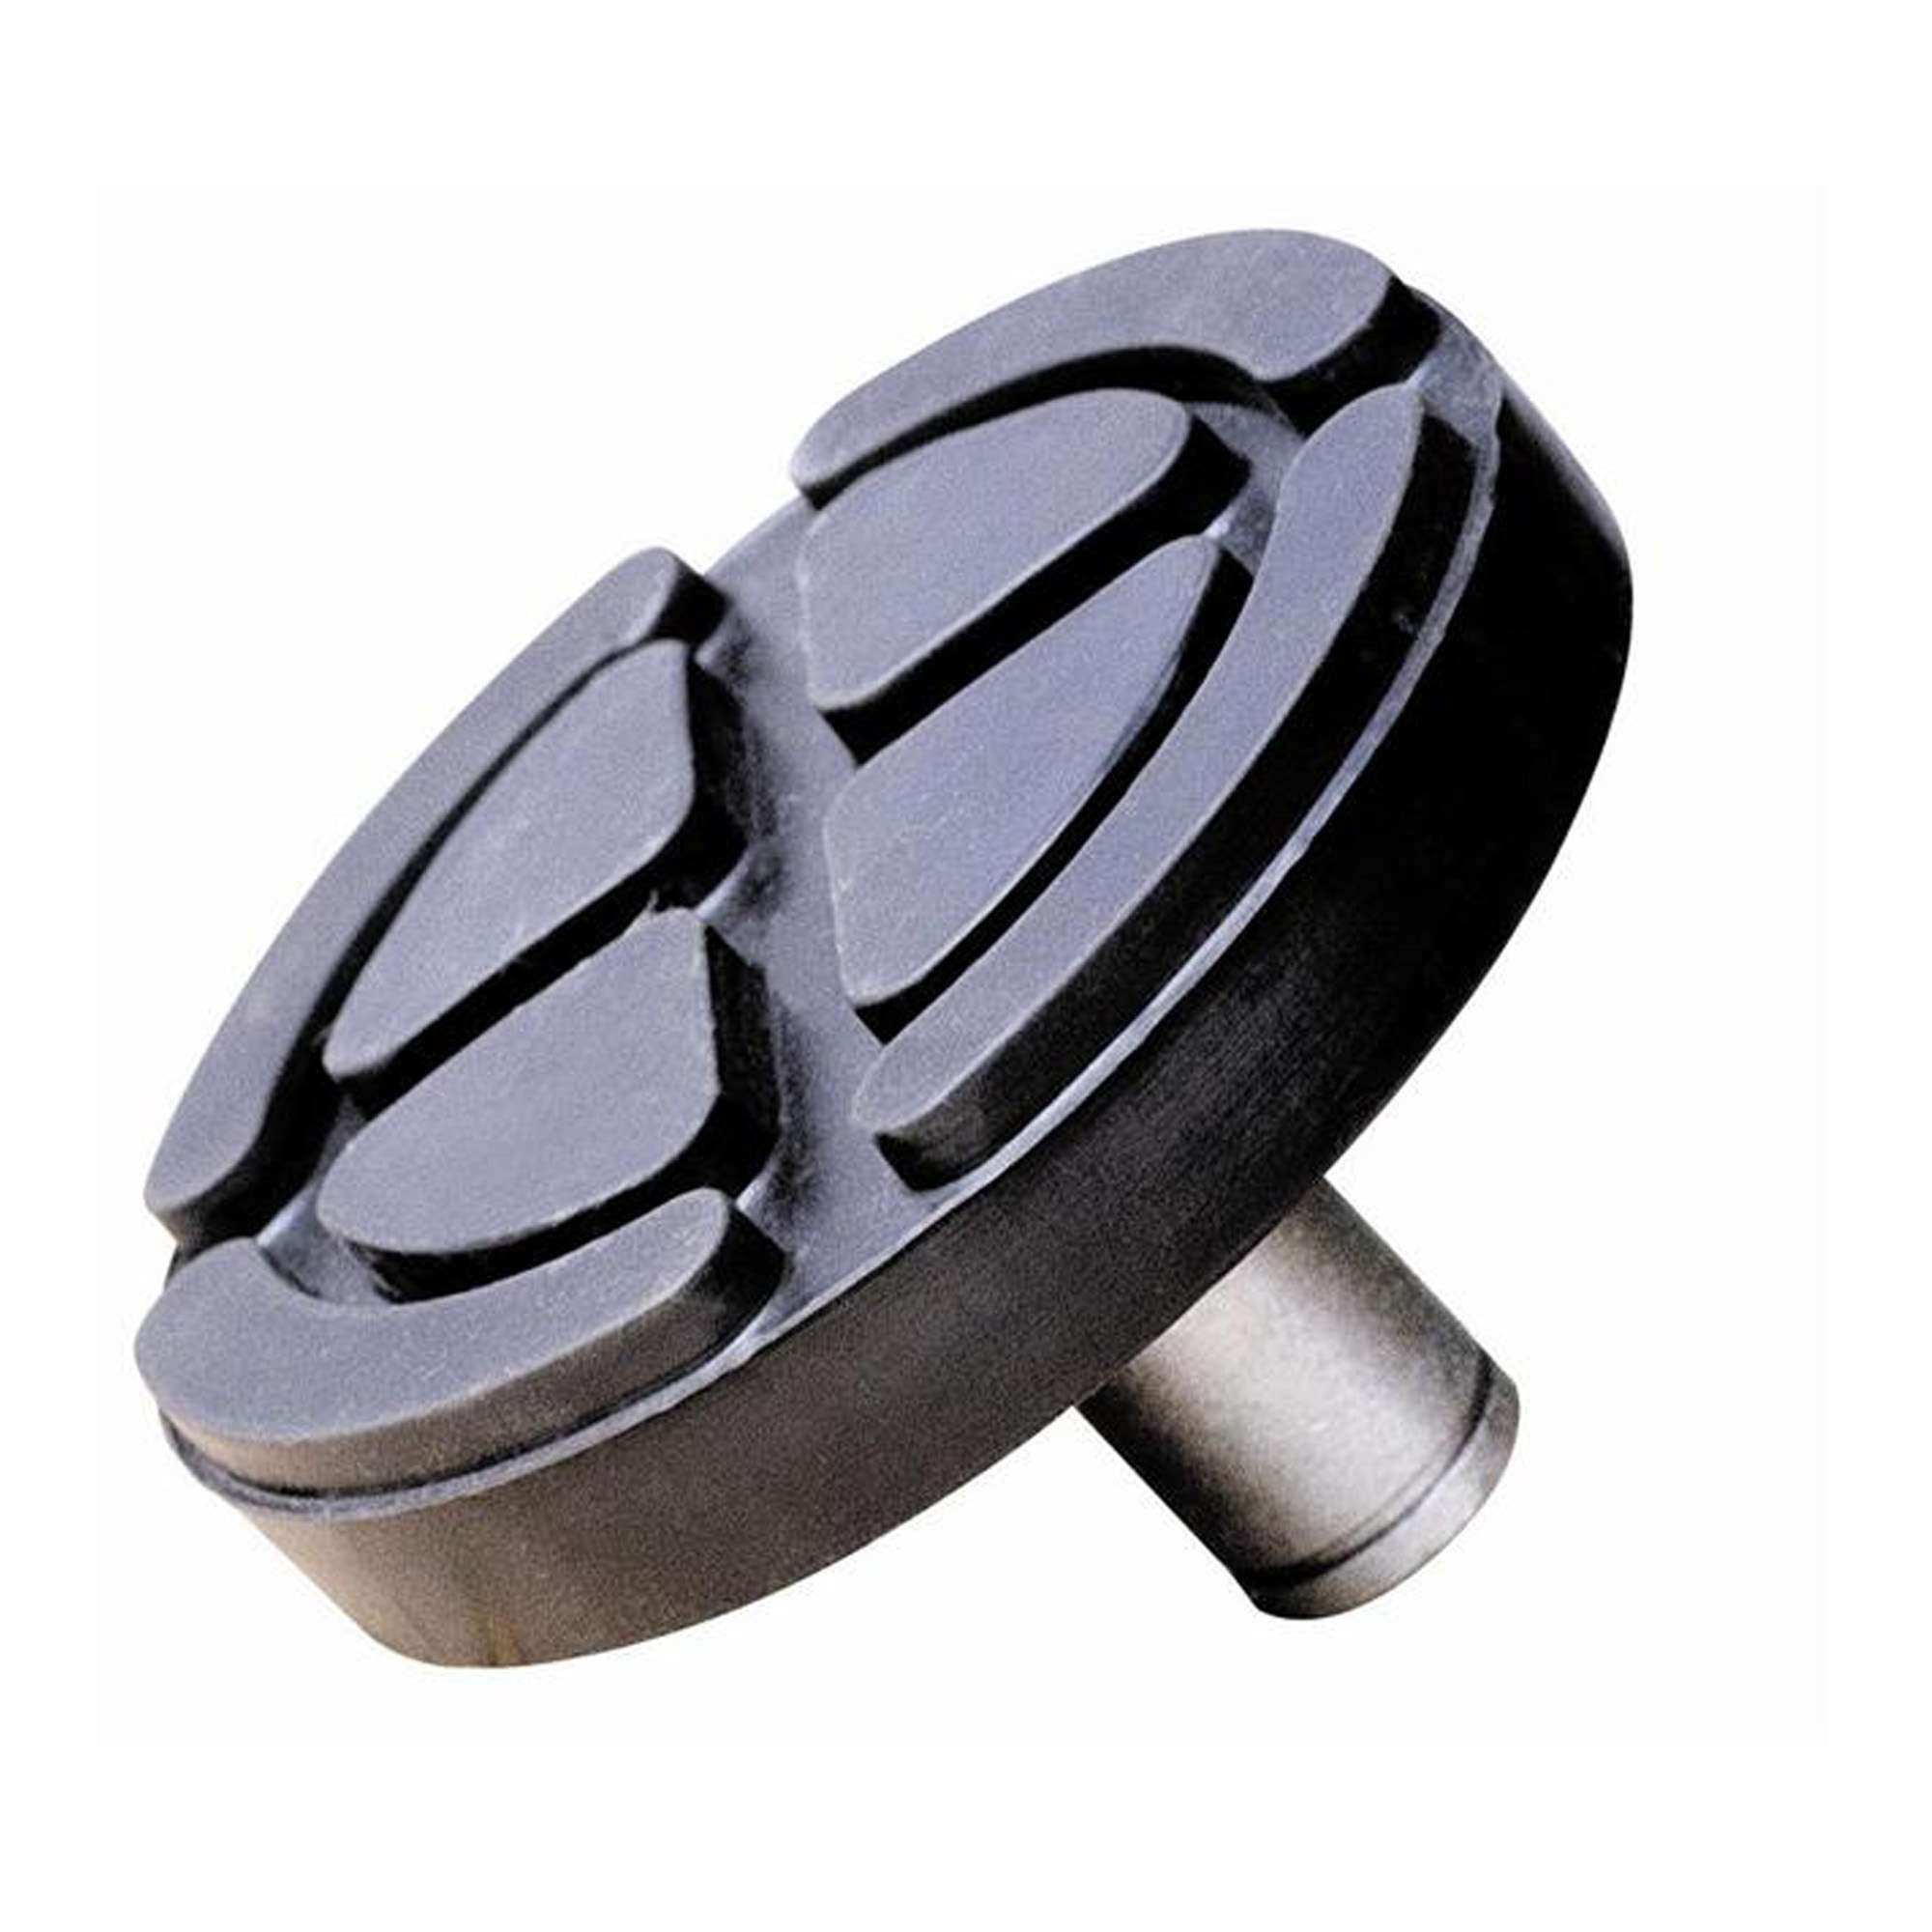 Supporto in acciaio ricoperto in gomma per sollevatori idraulici - OMCN 392/B